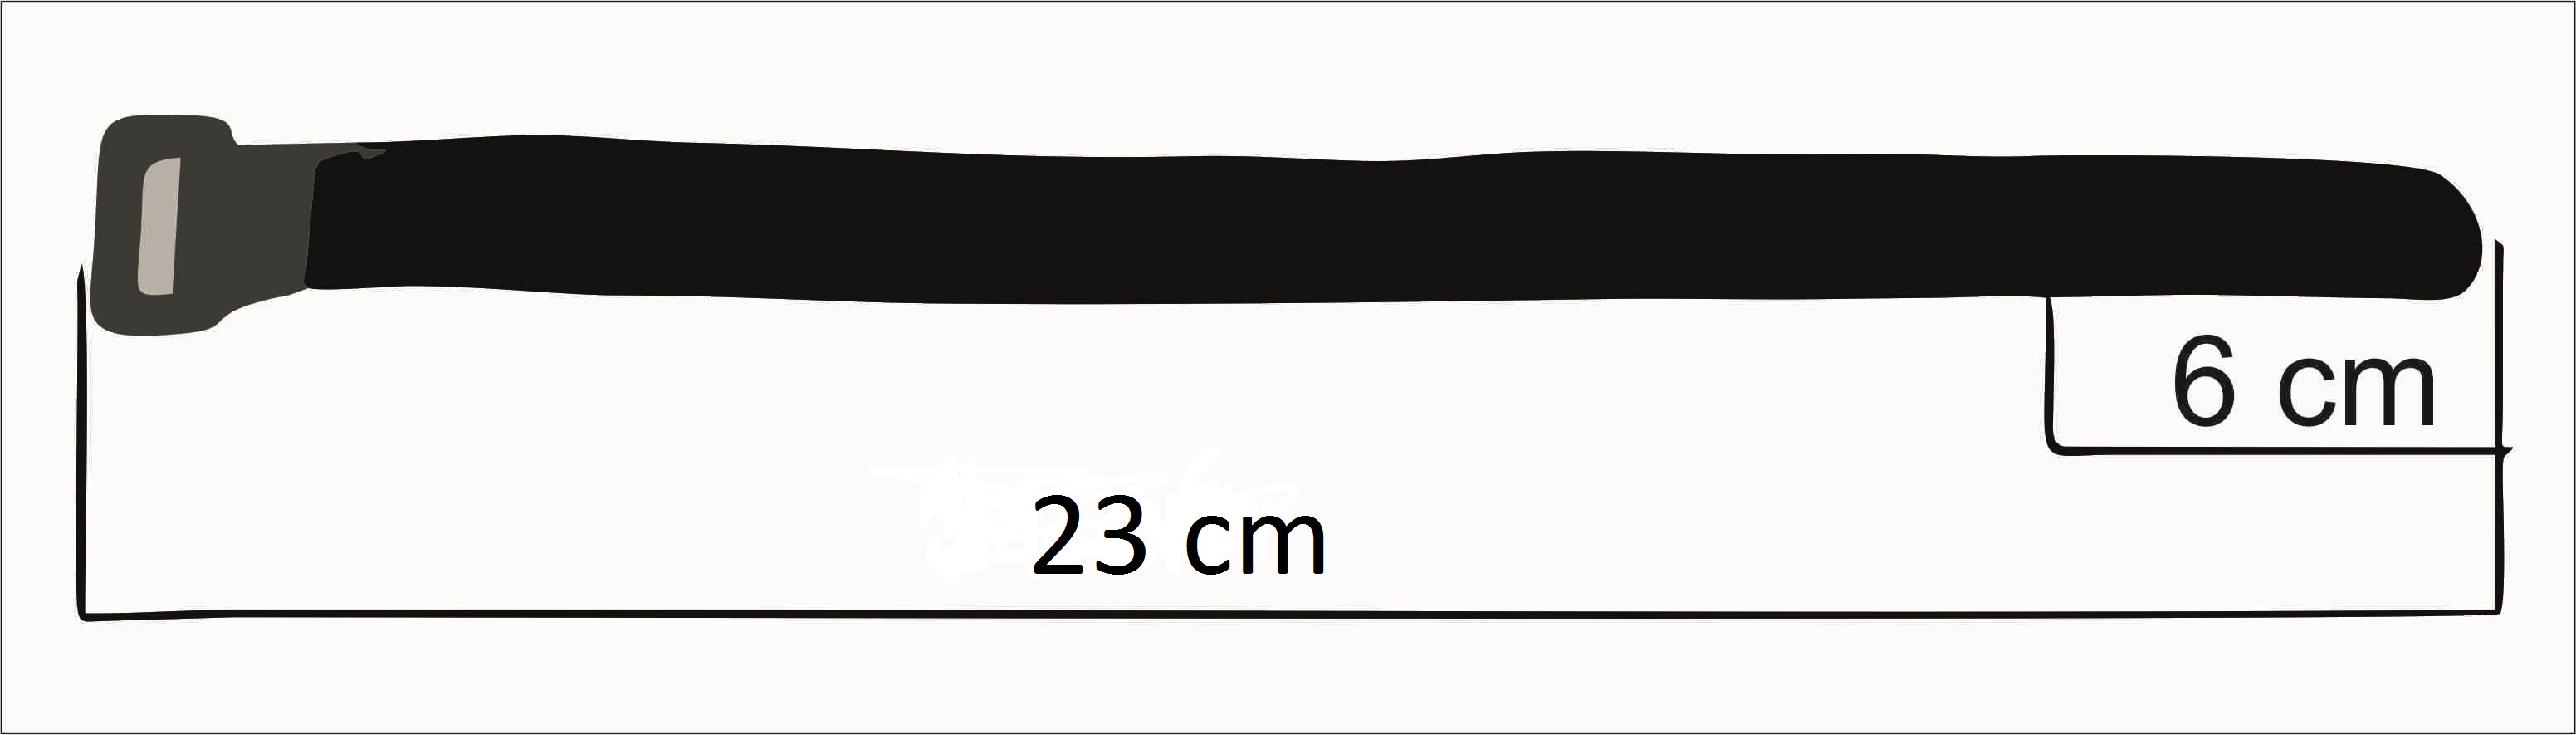 Correa Sujeta Cables De Velcro Con Hebilla Plástica 23 cm